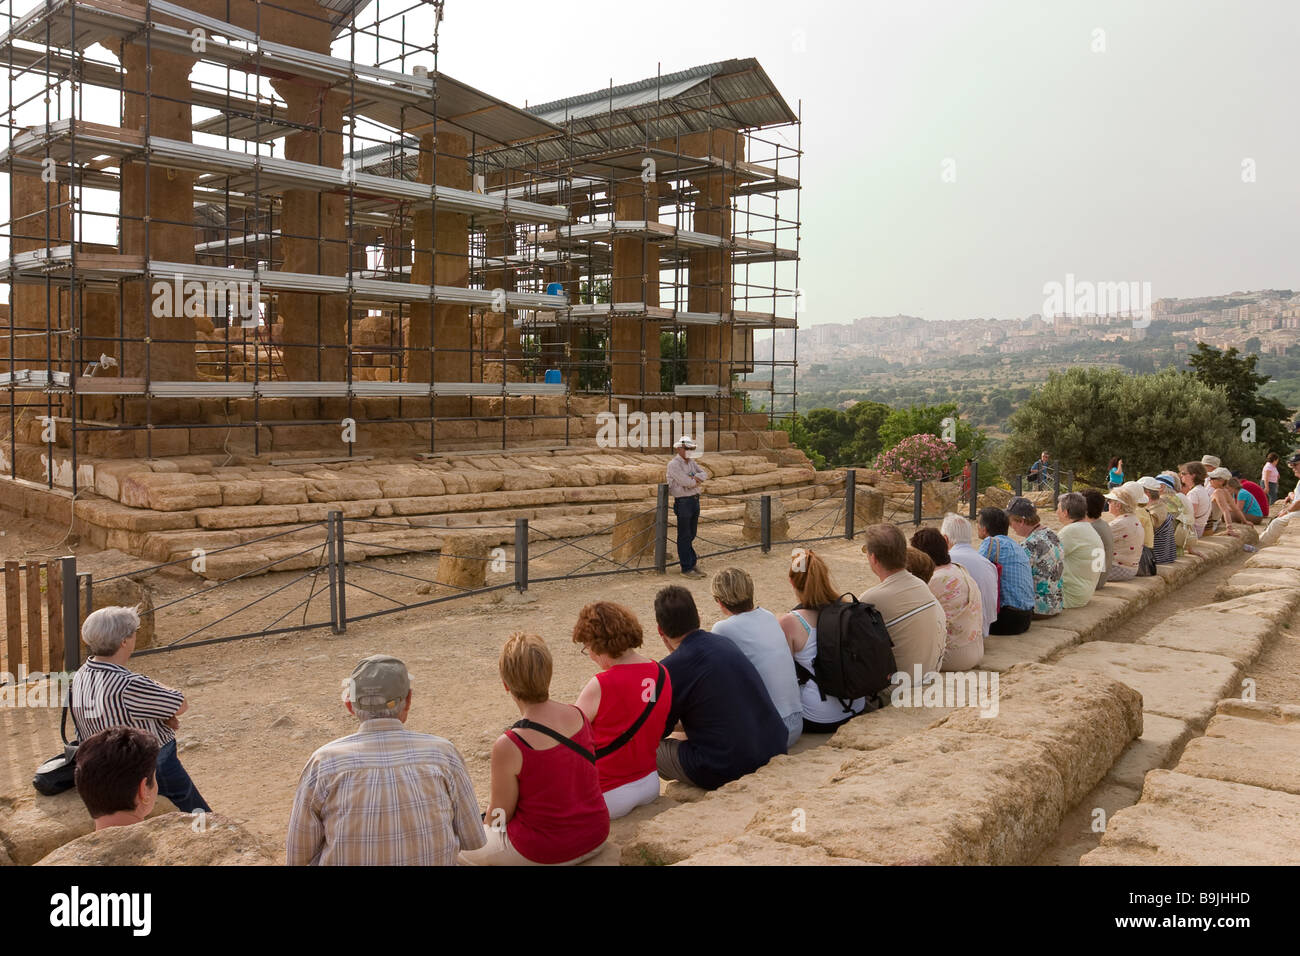 Tour de charla. Un grupo de turistas se asienta sobre los antiguos pasos delante del templo de Juno Lacinia, que se describe en la guía. Foto de stock